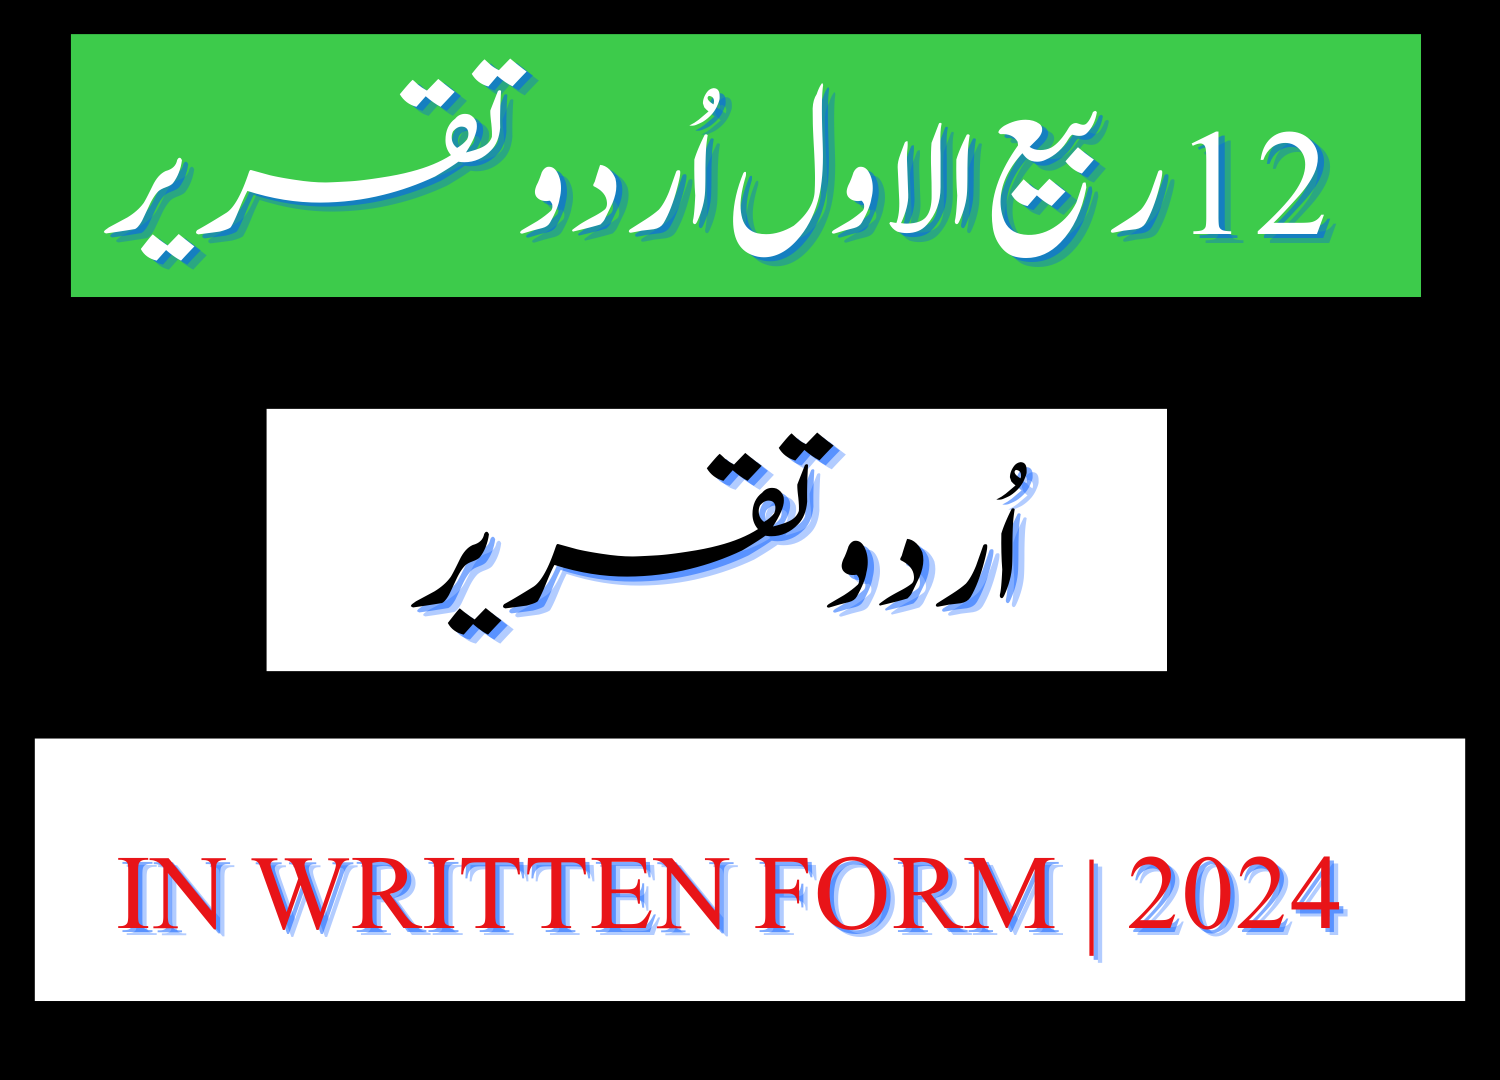 Speech on 12 Rabi ul Awal in Urdu in written form